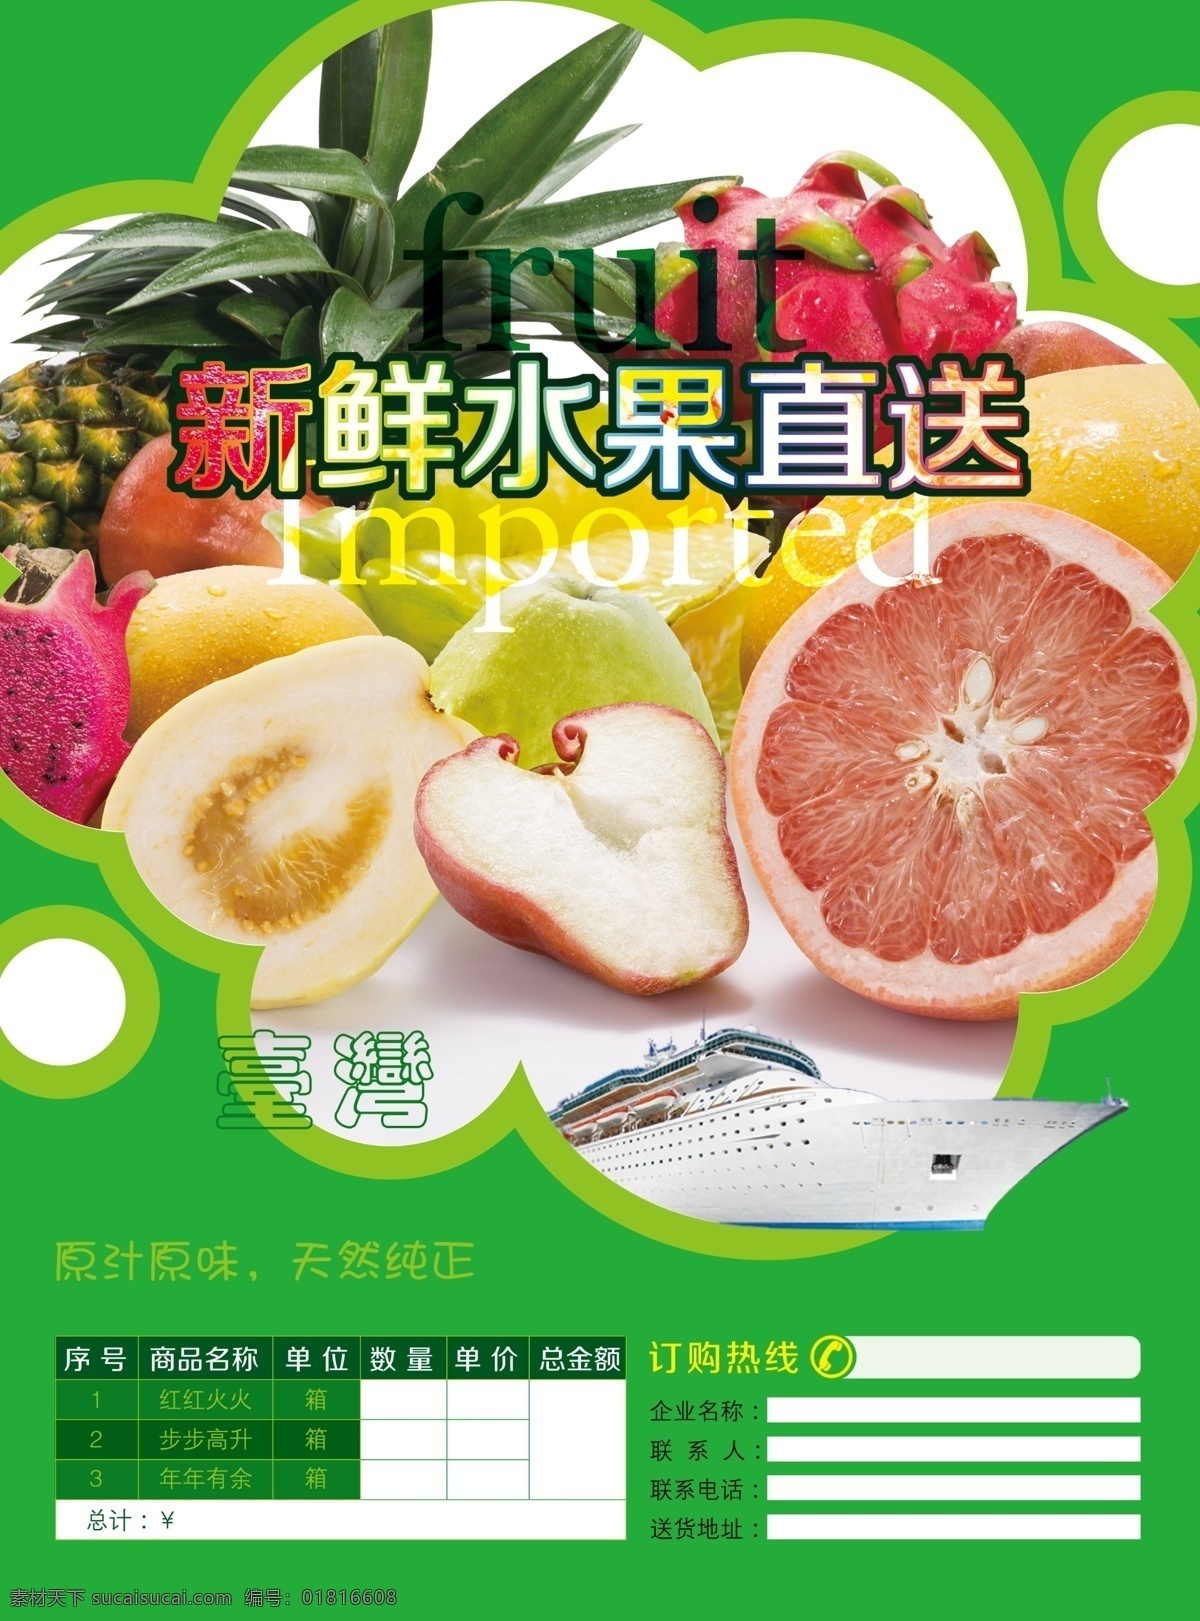 dm宣传单 传单 广告设计模板 水果 水果传单 源文件 台湾 模板下载 台湾水果传单 台湾水果 台湾水果配送 psd源文件 餐饮素材